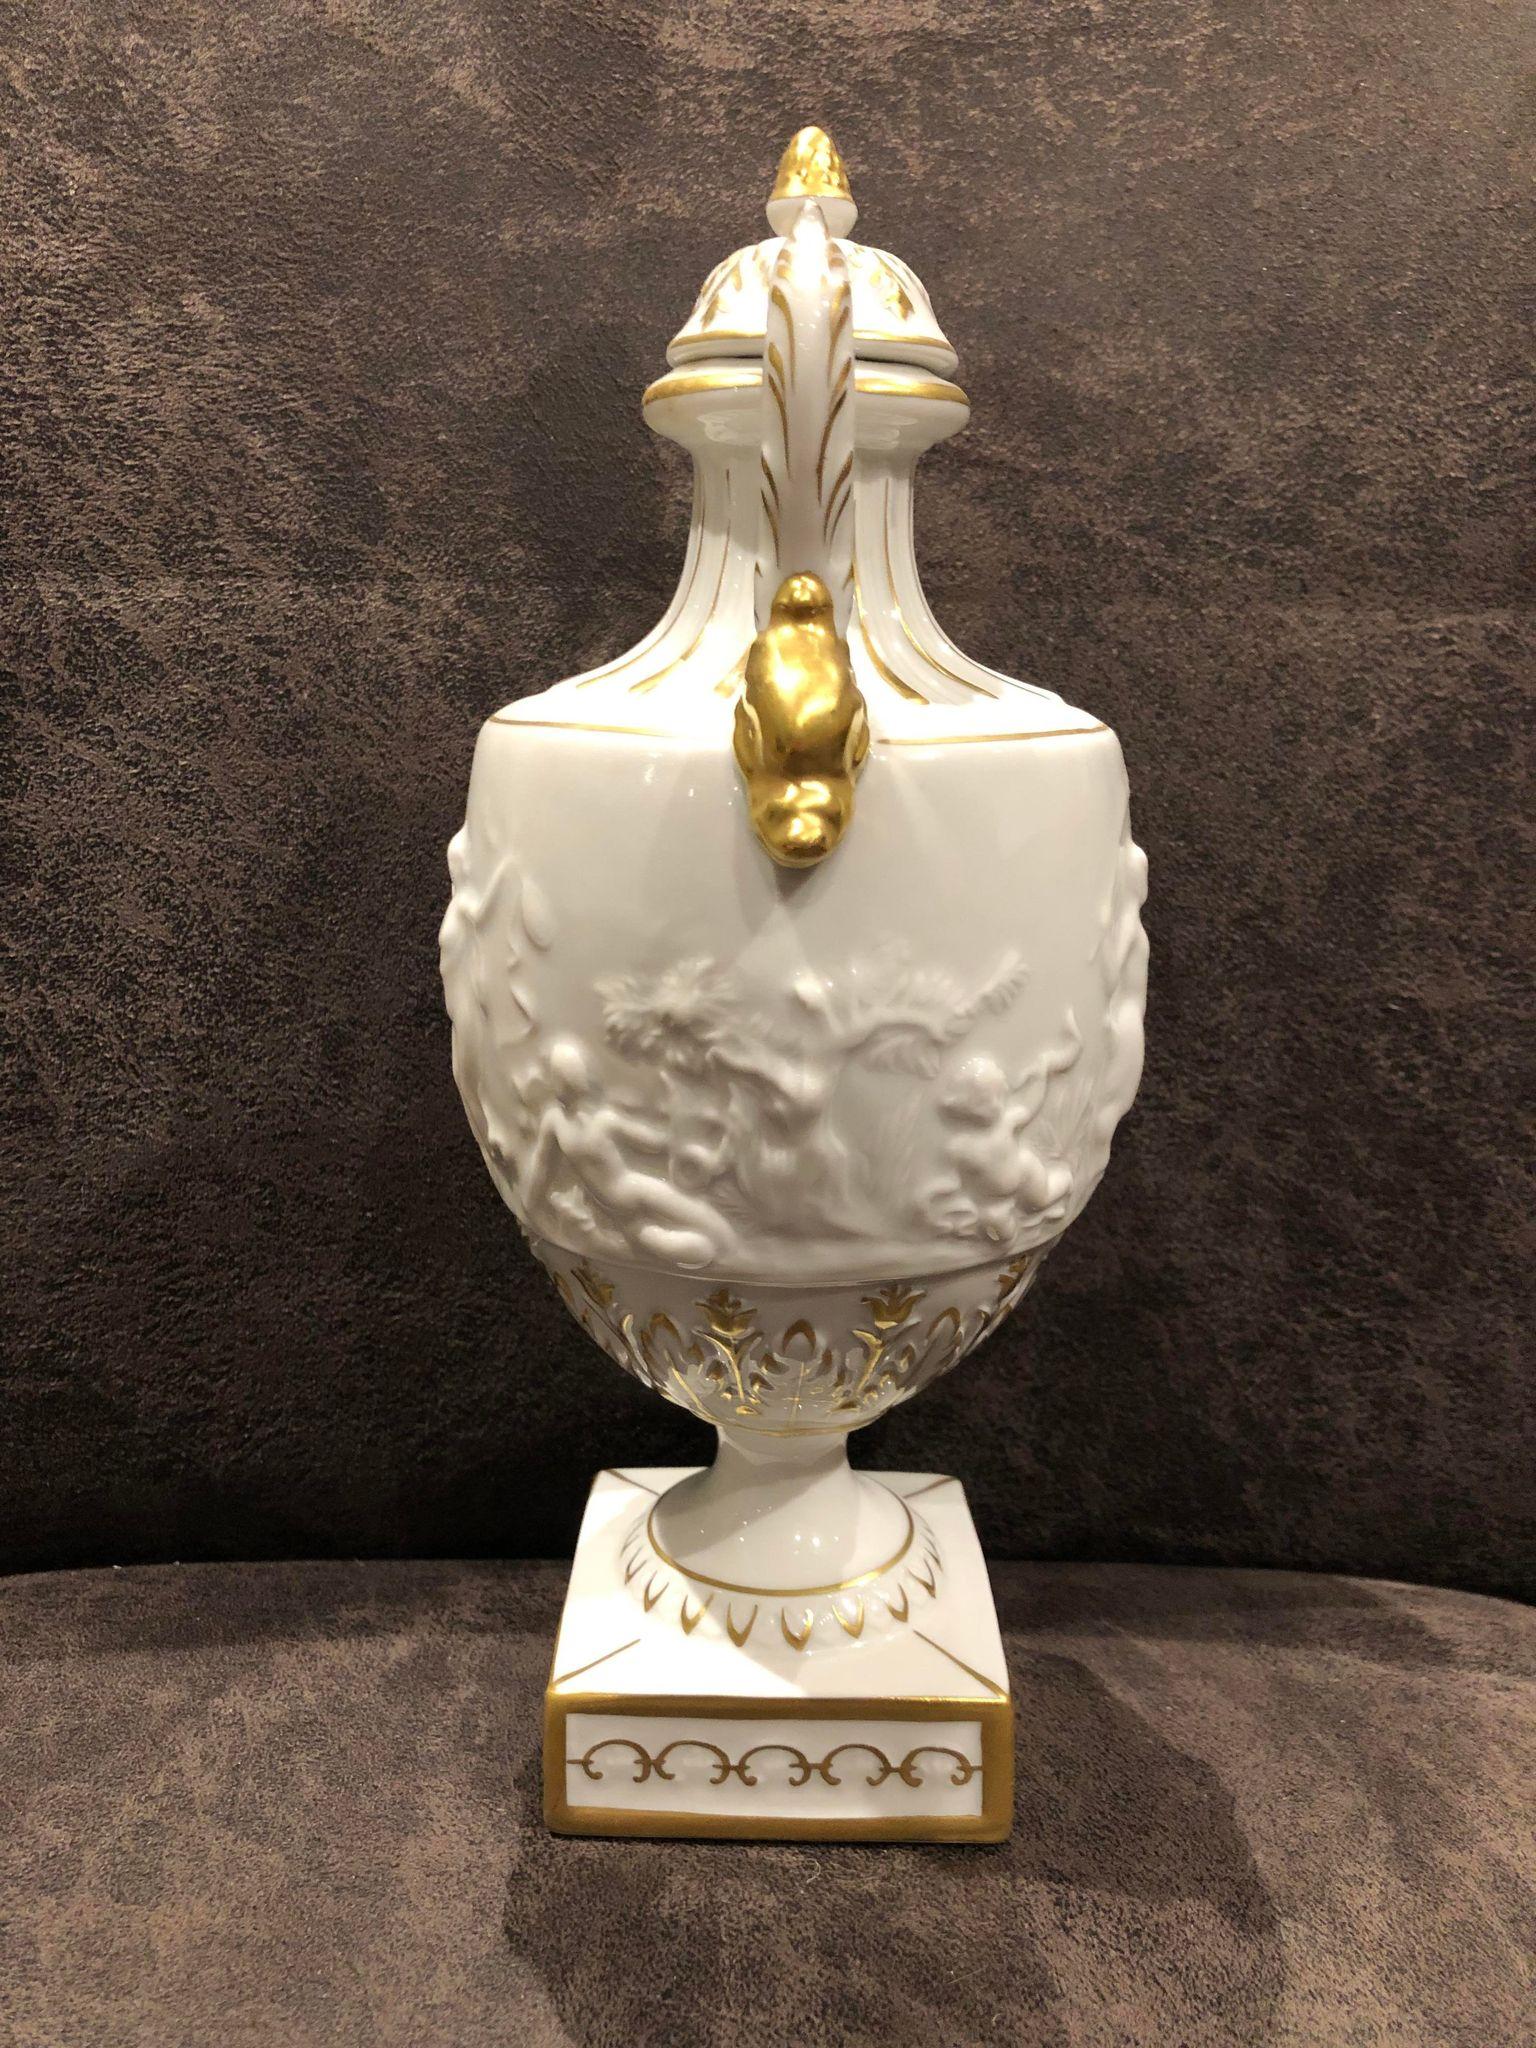 Vase en porcelaine fine avec des anses en forme de cygne doré, de style palatial. La forme classique de l'amphore, la porcelaine blanche comme la neige, la magnifique image en relief de gracieuses jeunes filles de l'Antiquité, la plus haute qualité